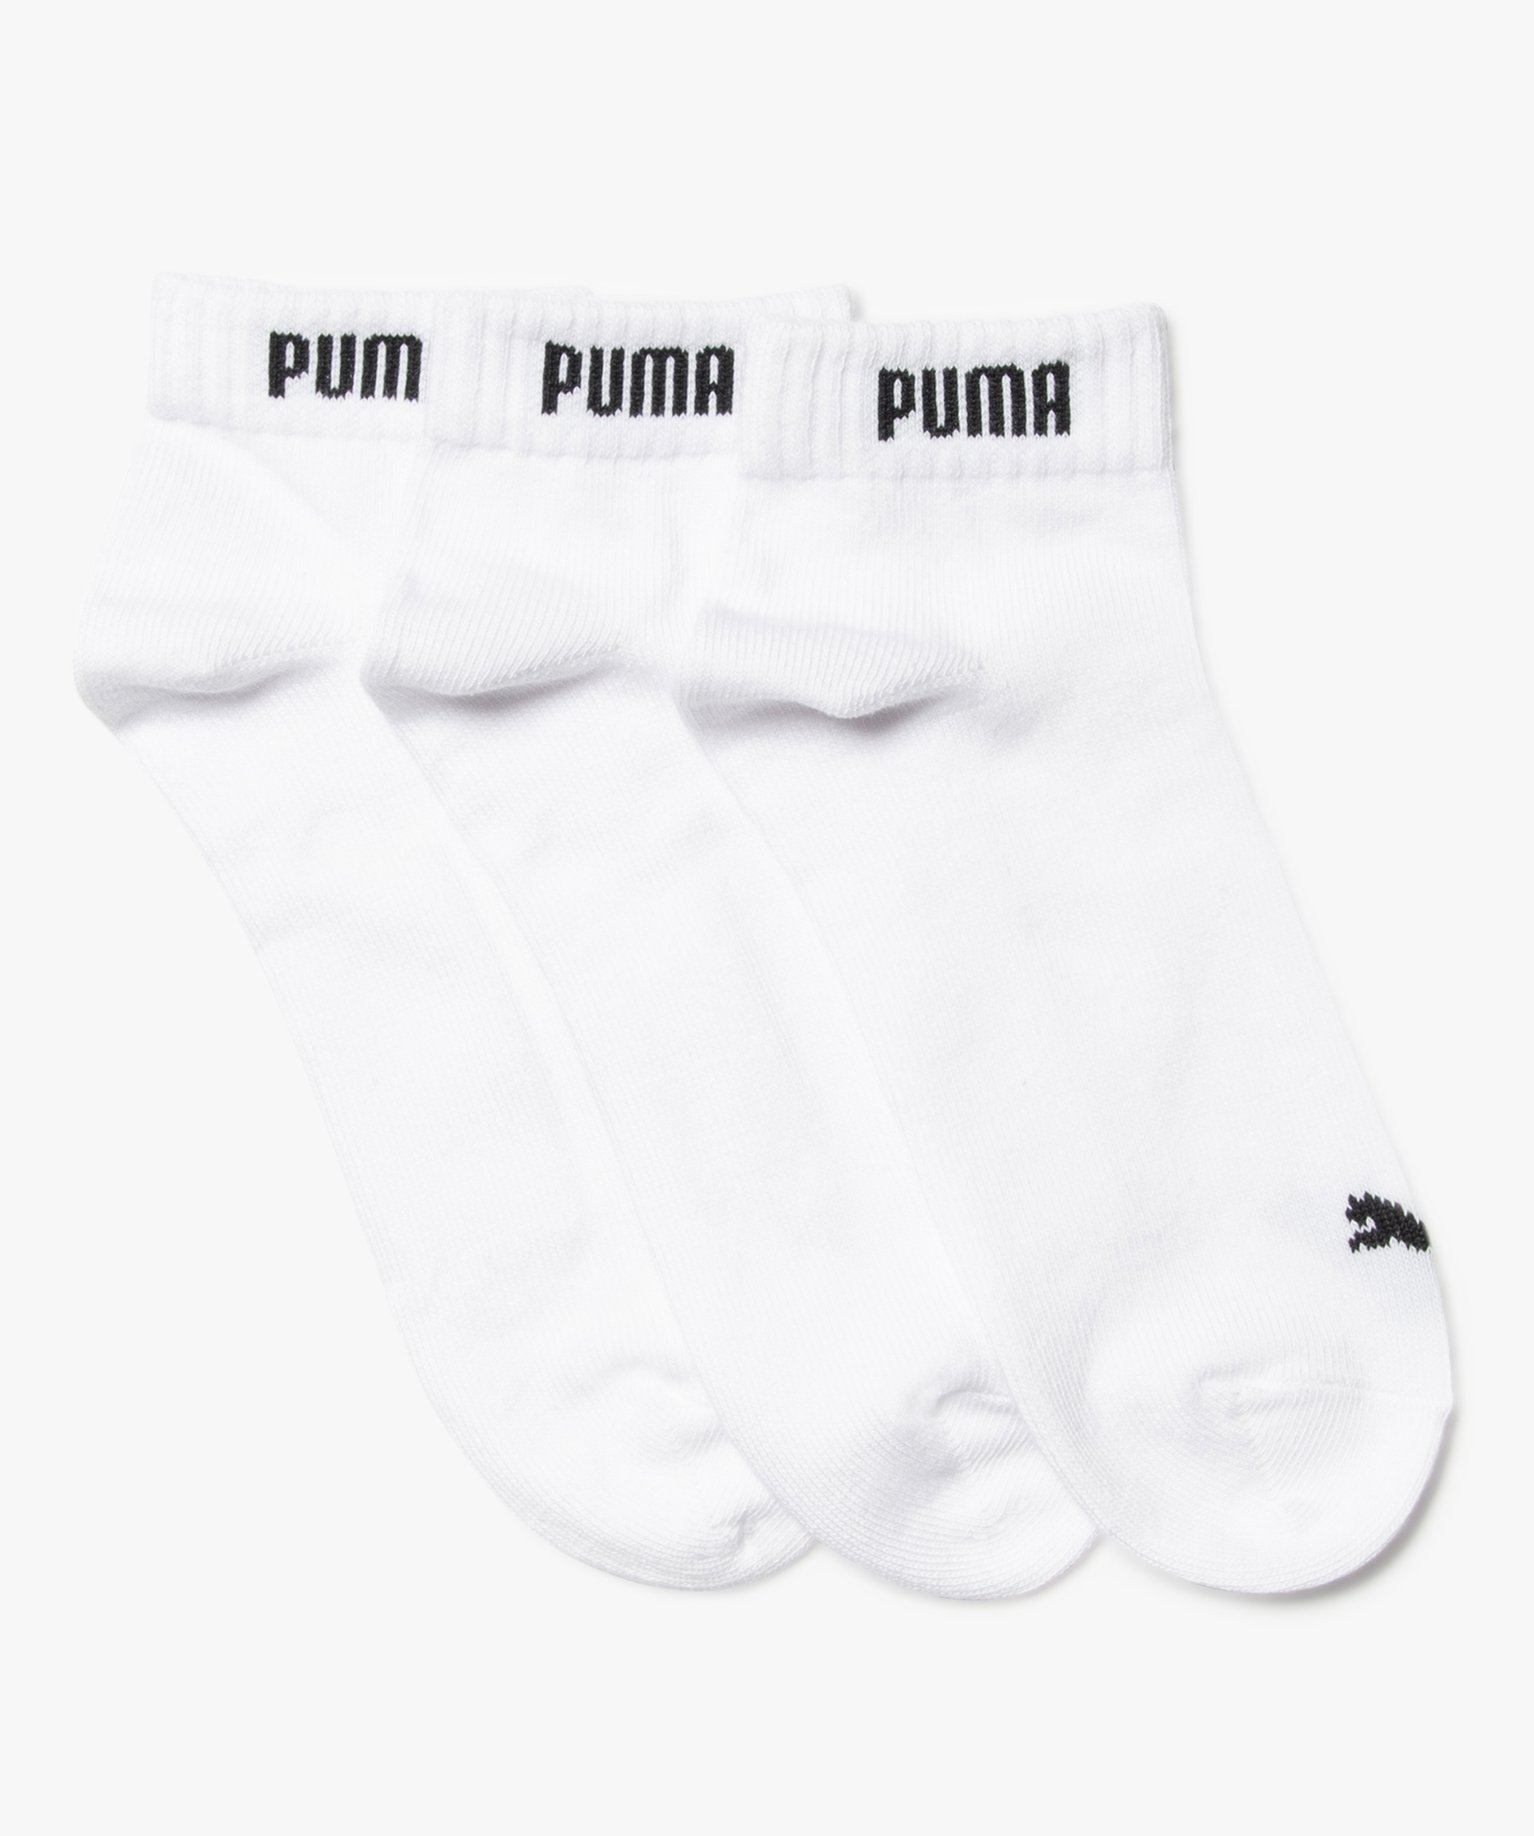 chaussettes homme special sport tige courte (lot de 3) - puma blanc